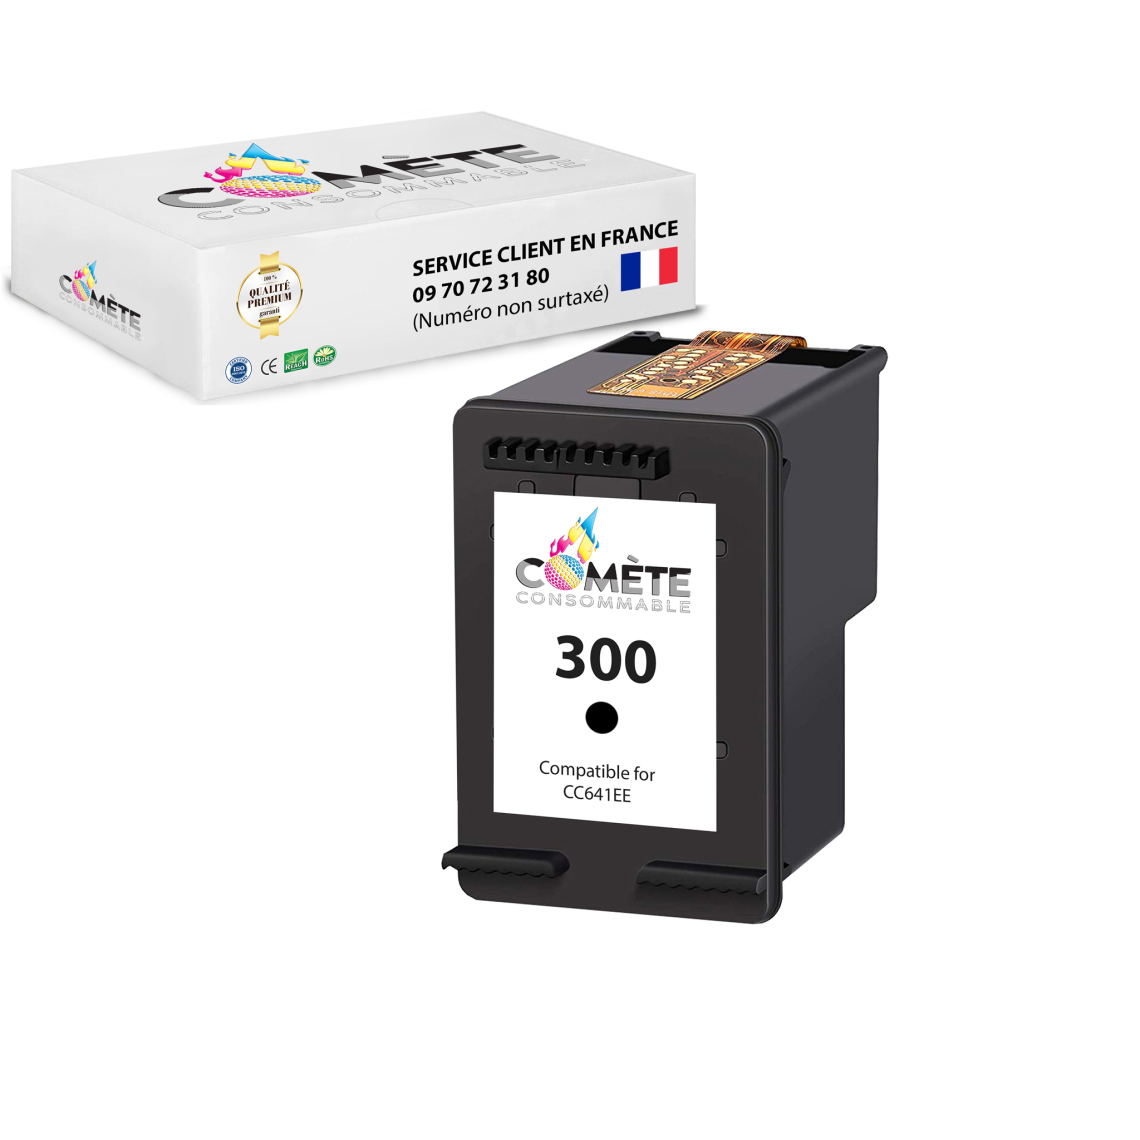 Comete Consommable - 300 1 Cartouche d'encre compatible avec HP 300 Noir - Imprimante Jet d'encre